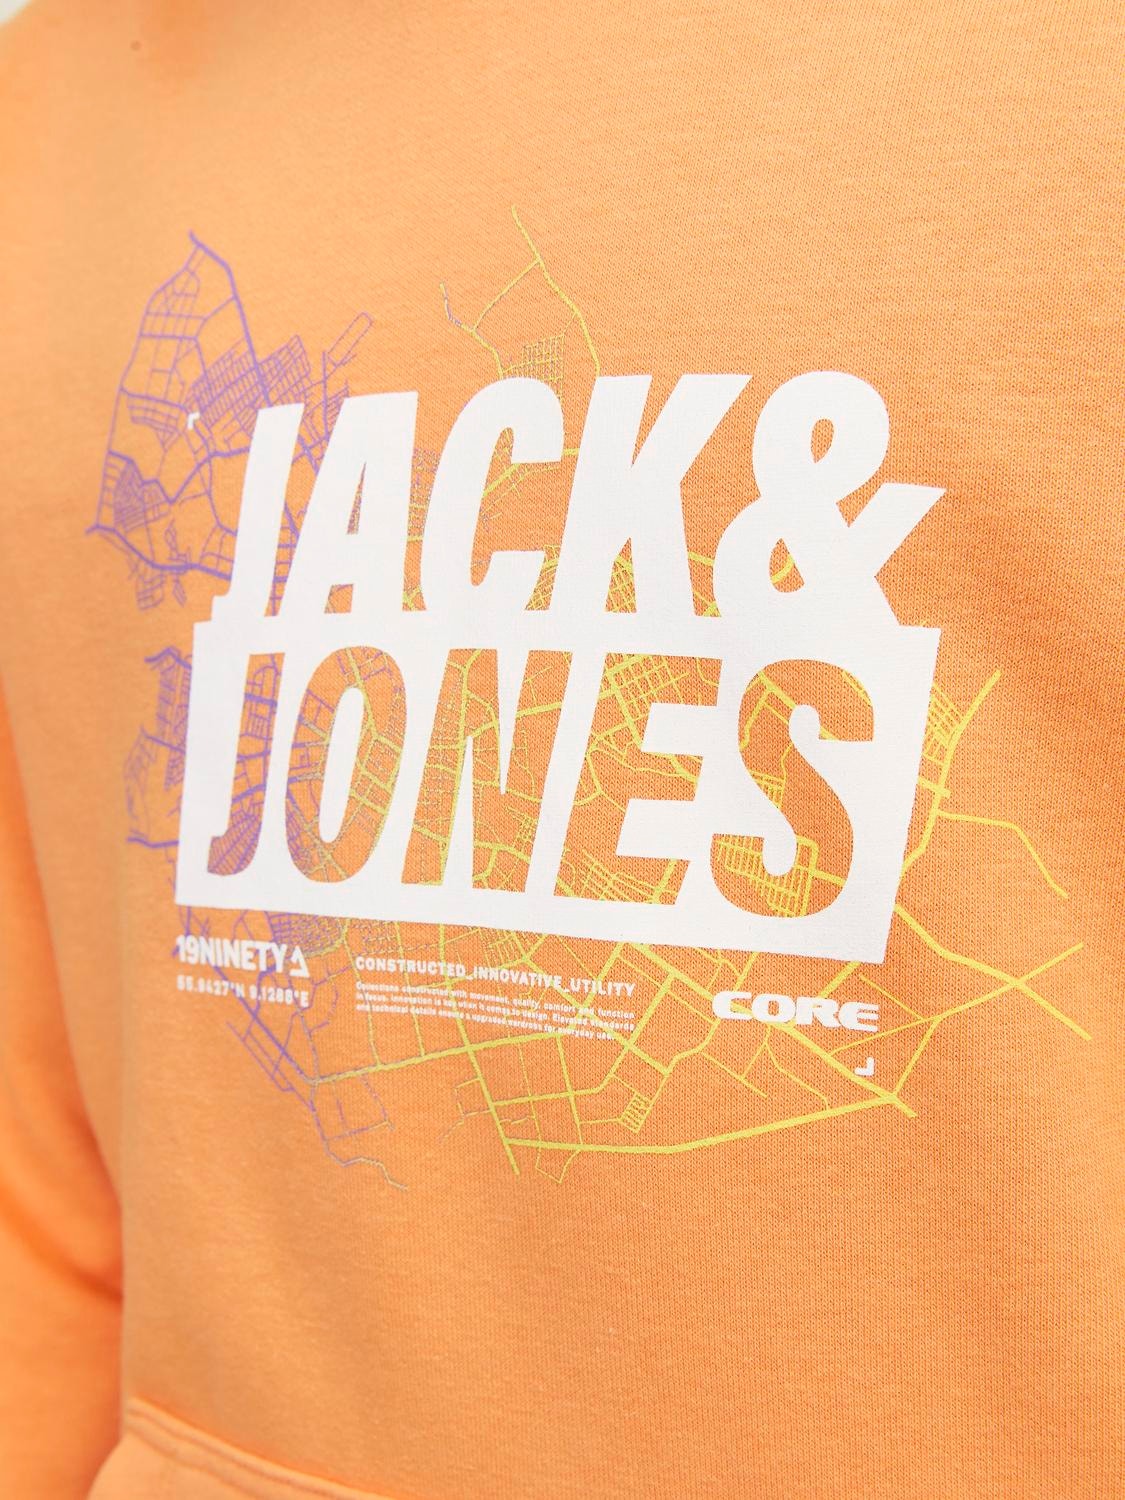 Jack & Jones Gedruckt Kapuzenpullover Für jungs -Tangerine - 12253990